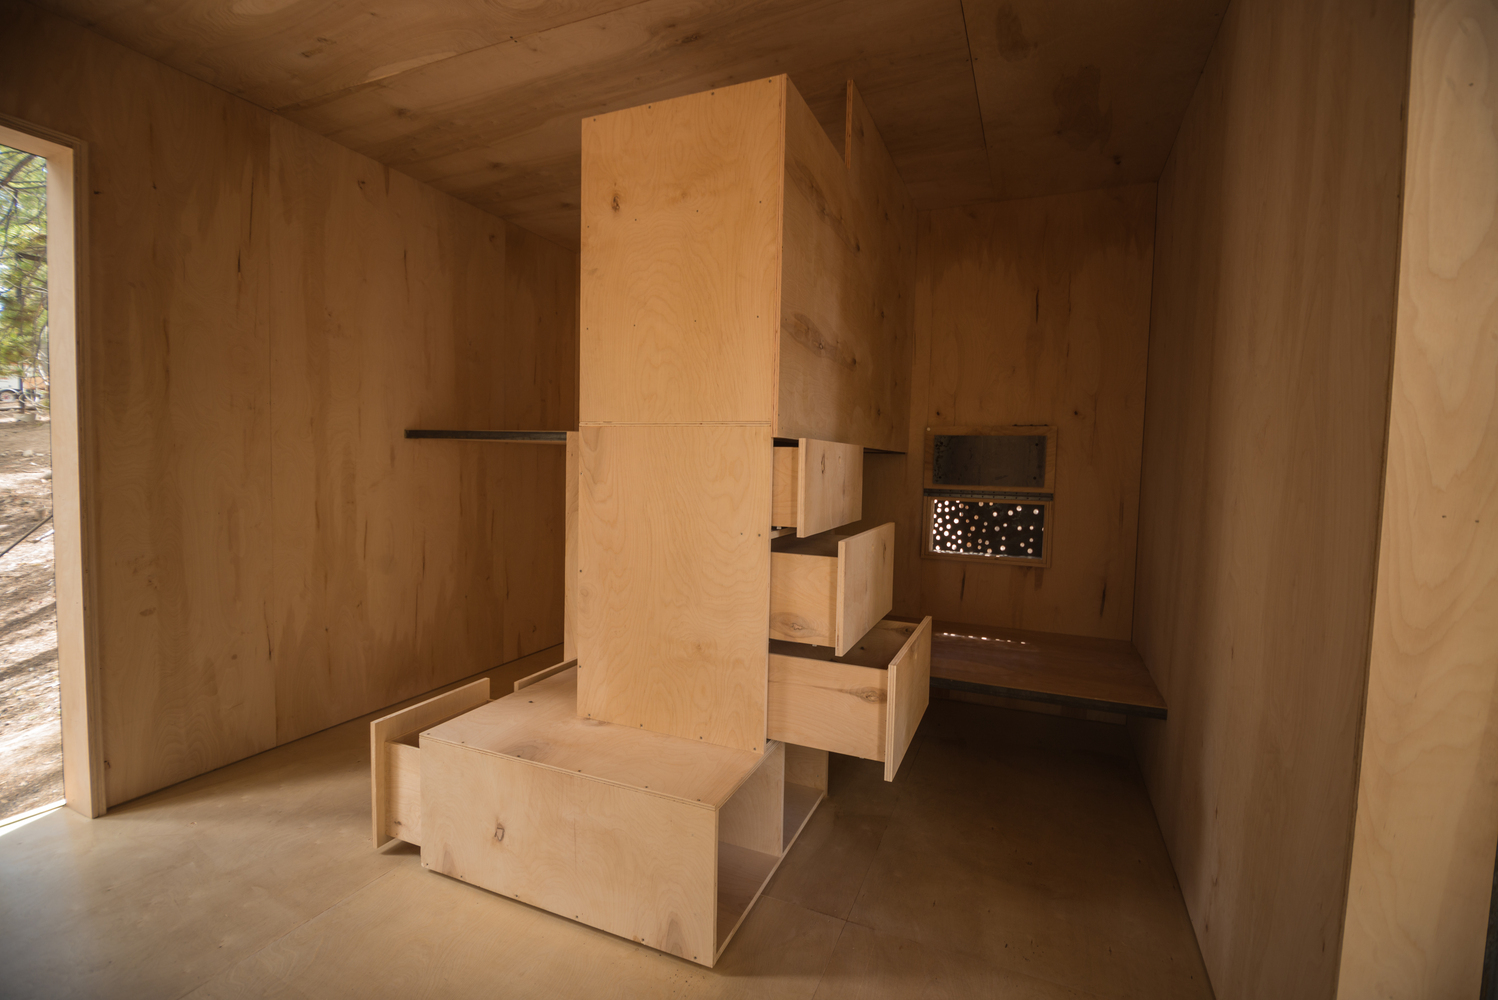 Hình ảnh một căn phòng nhỏ làm bằng gỗ chủ đạo, ở giữa đặt tủ kệ bằng gỗ có nhiều ngăn kéo.